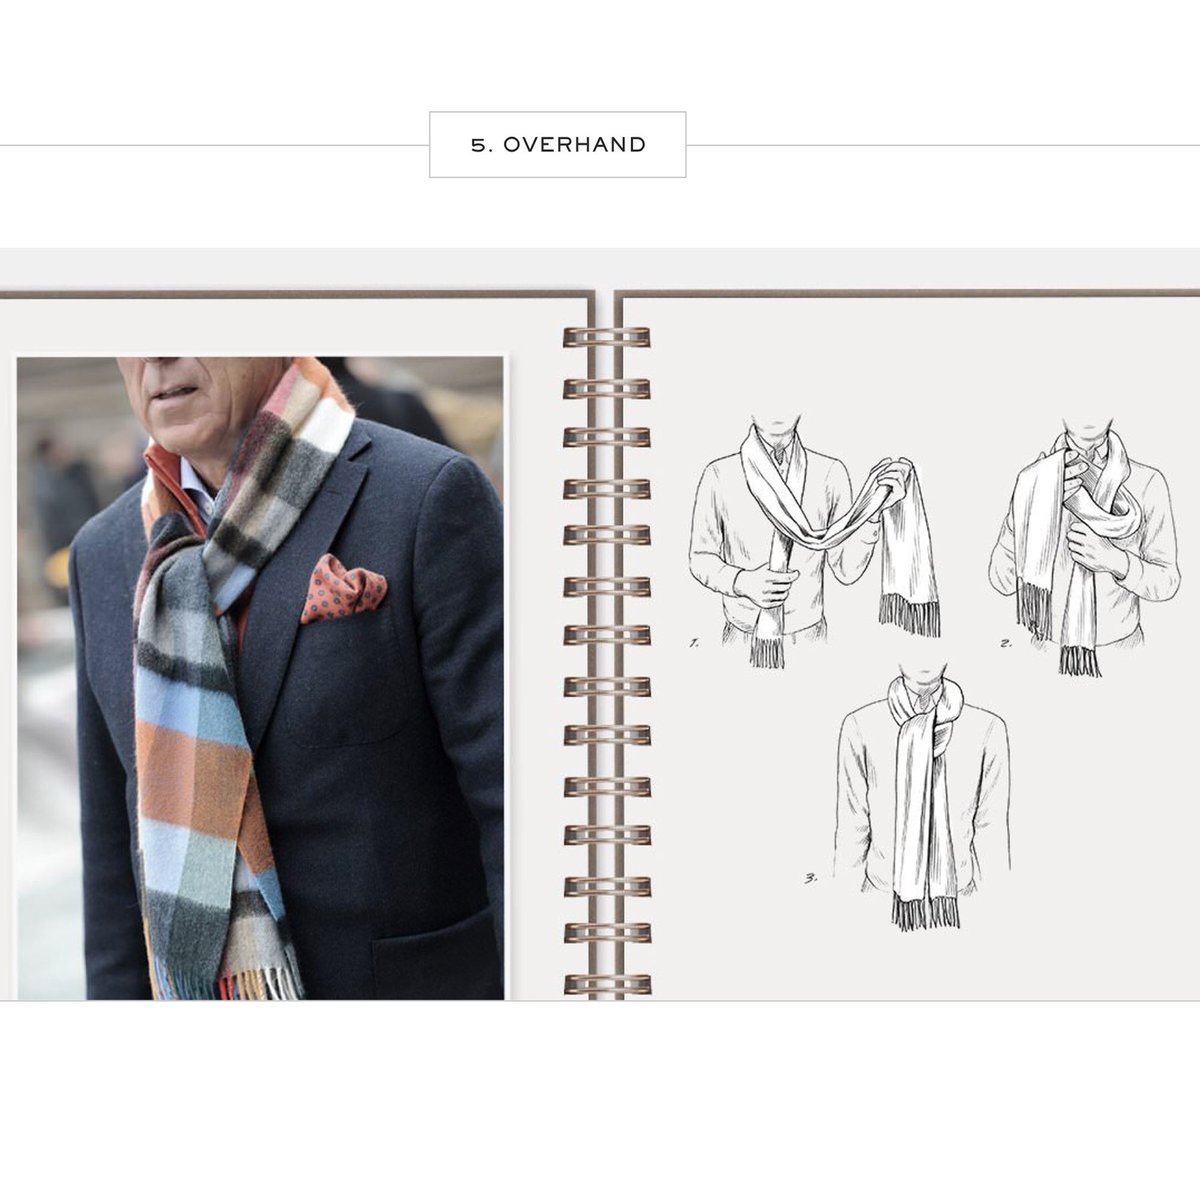 Как шарф завязать на пальто мужчине: Стильные способы завязывания шарфа для мужчин